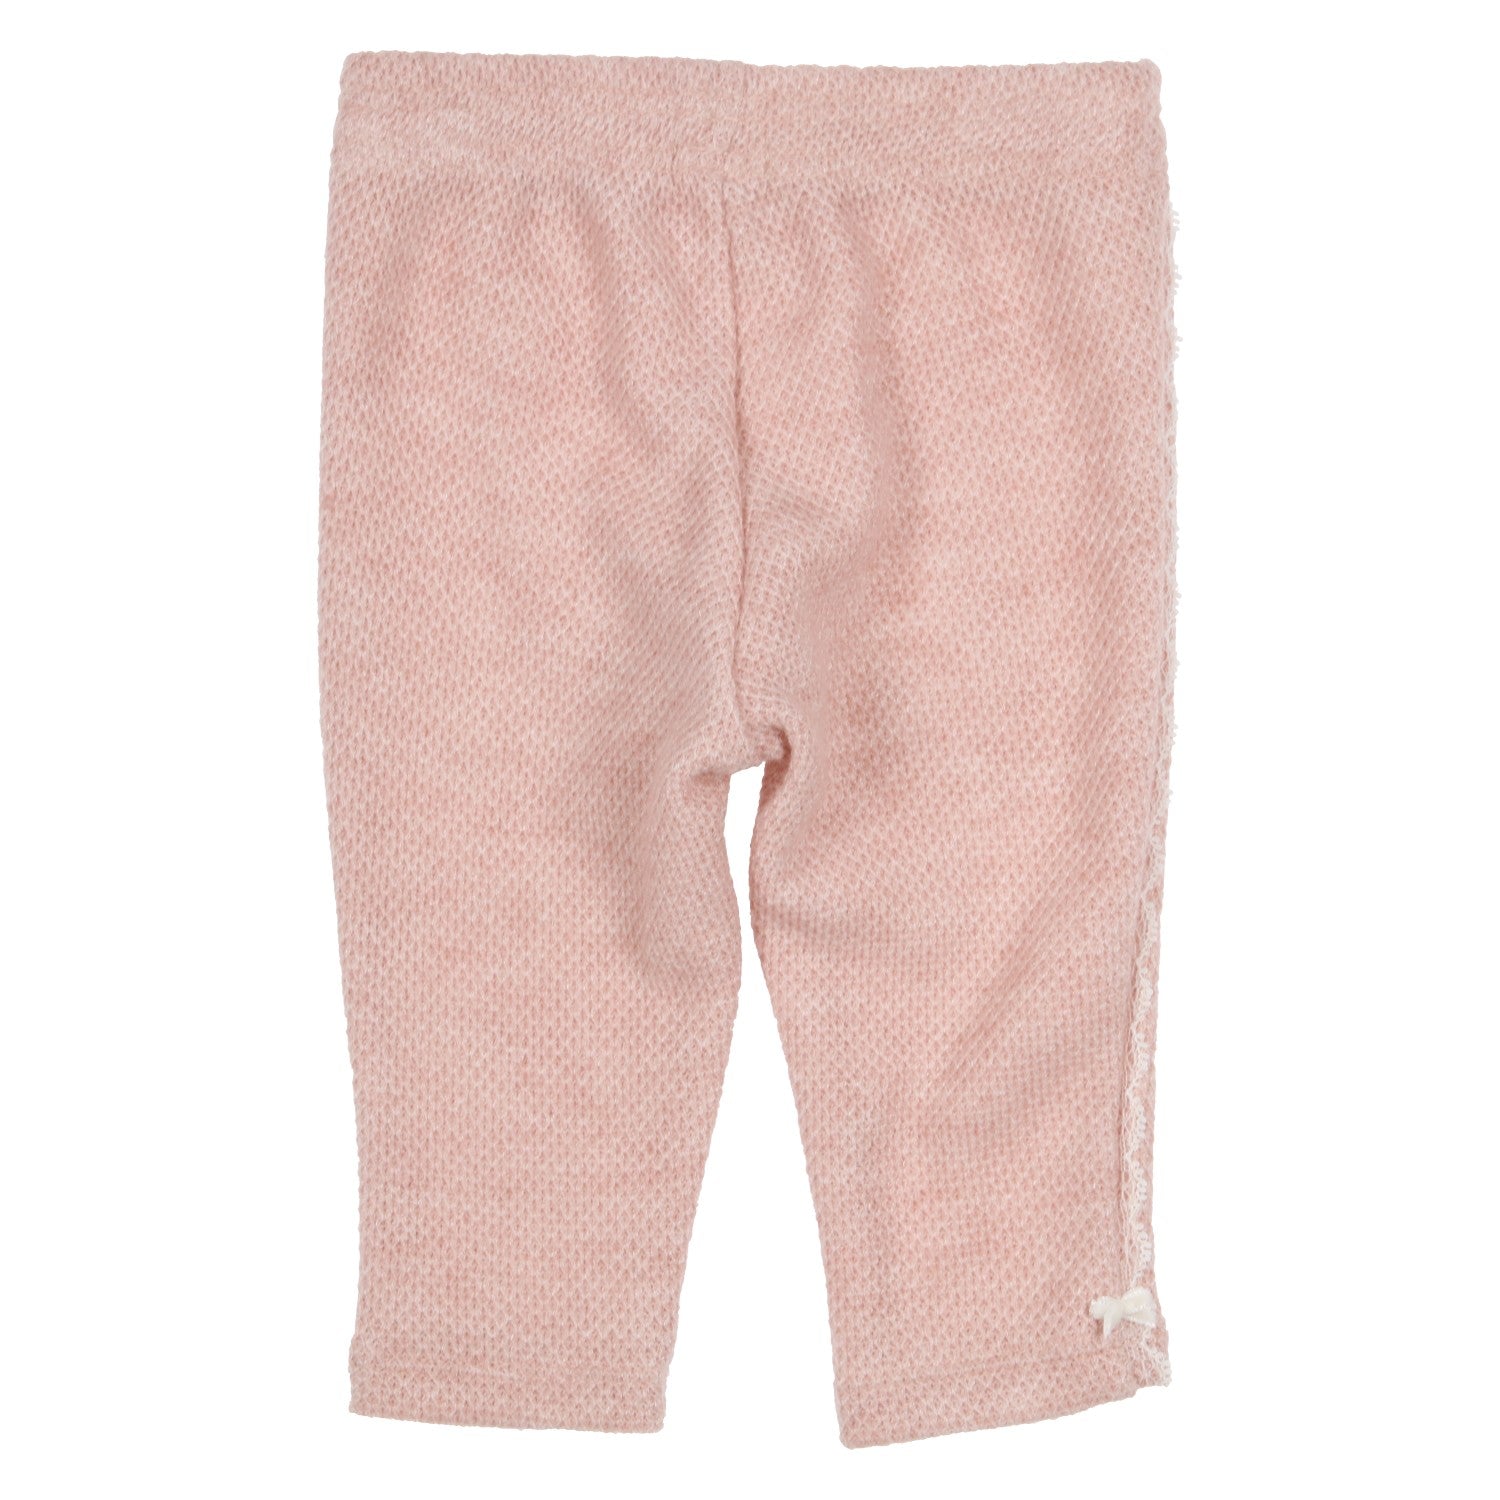 Girls Rose Pink Legging - Nana B Baby & Childrenswear Boutique